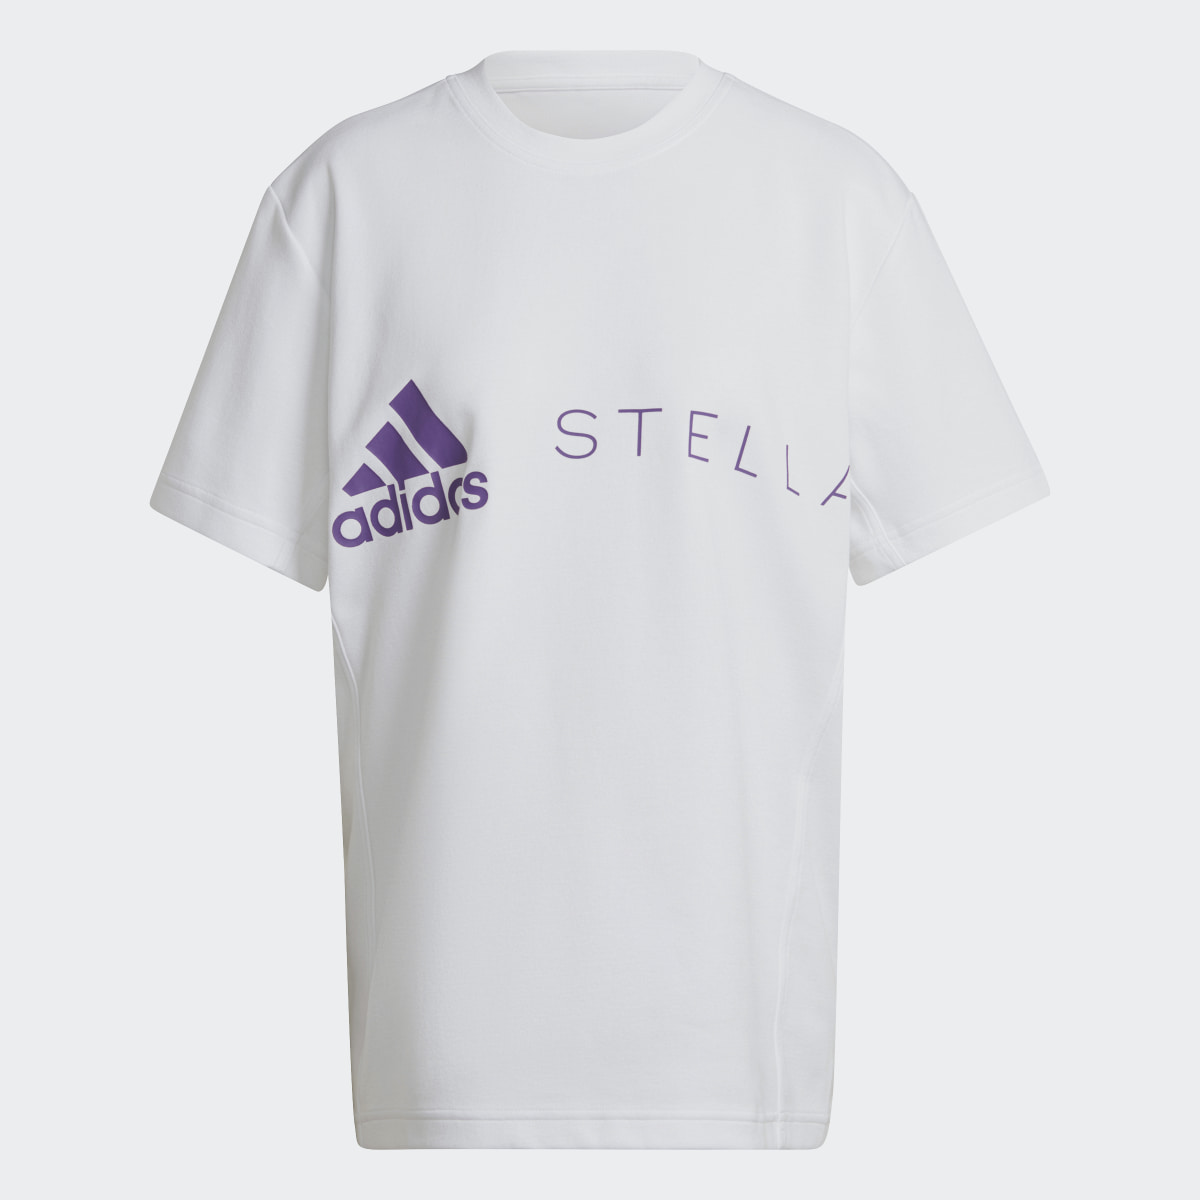 Adidas T-shirt adidas by Stella McCartney. 4